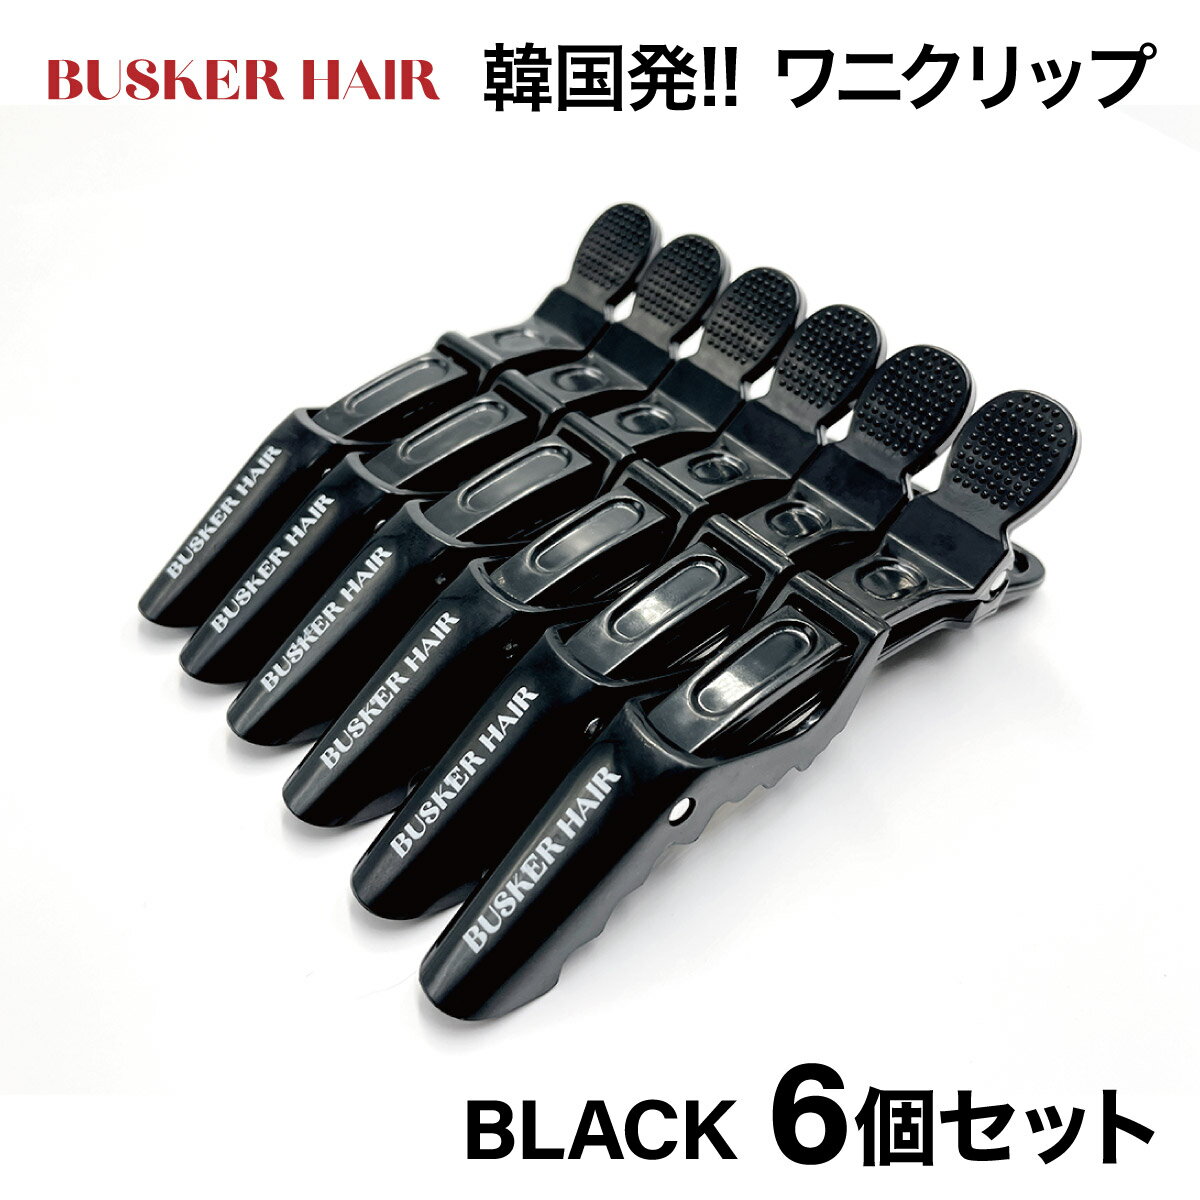 ヘアクリップ ワニクリップ 6本セット BUSKER HAIR バスカーヘア 韓国 韓国コスメ 美容室 美容師 髪 ダッカール プレゼント おしゃれ busker-hairpin